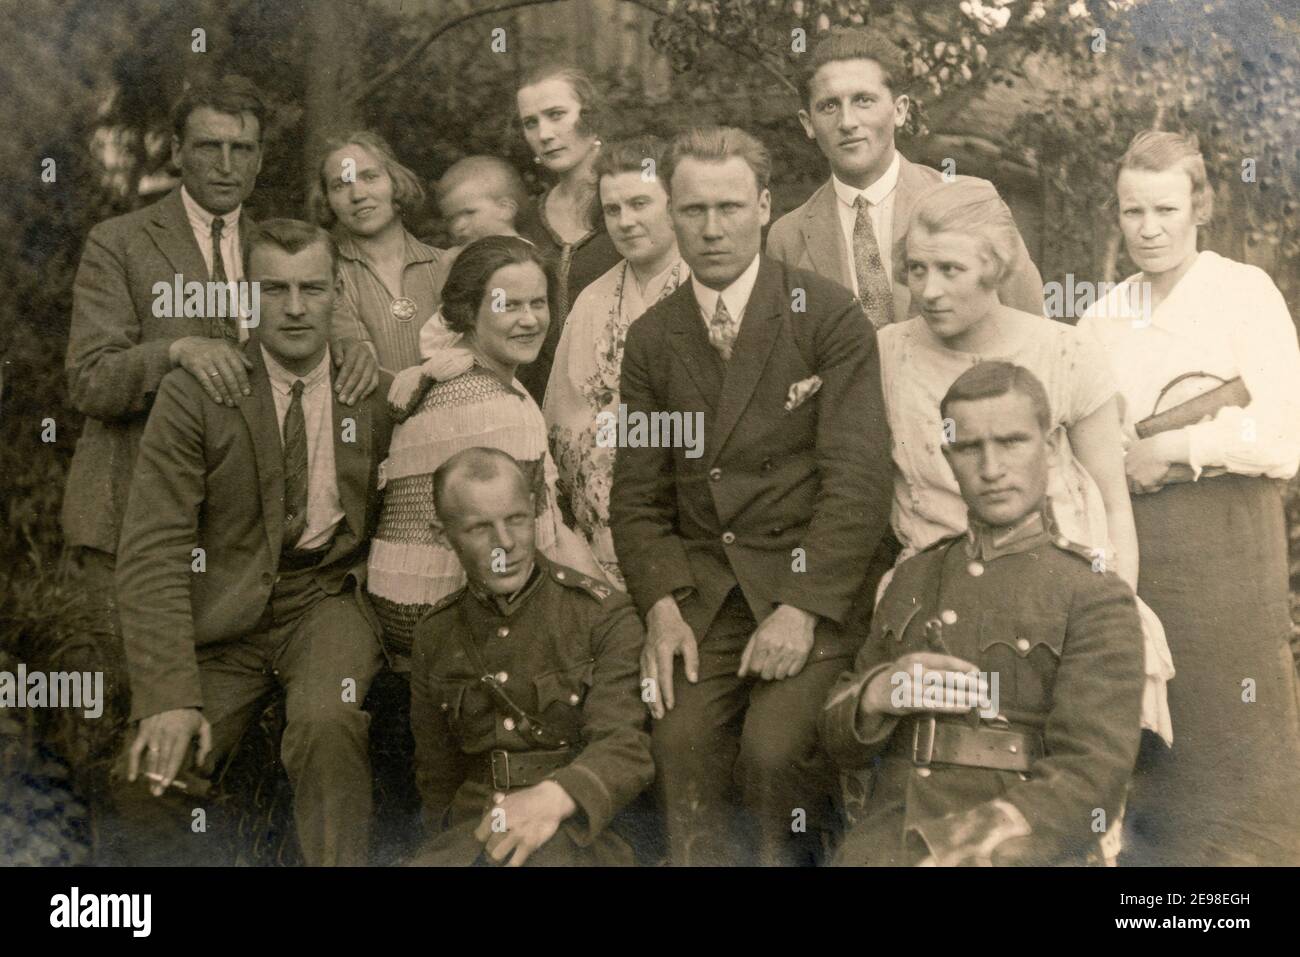 Lettonie - VERS les années 1920 : photo de groupe des invités de la fête. Quelques hommes en uniforme. Ancienne photo d'archive historique Banque D'Images